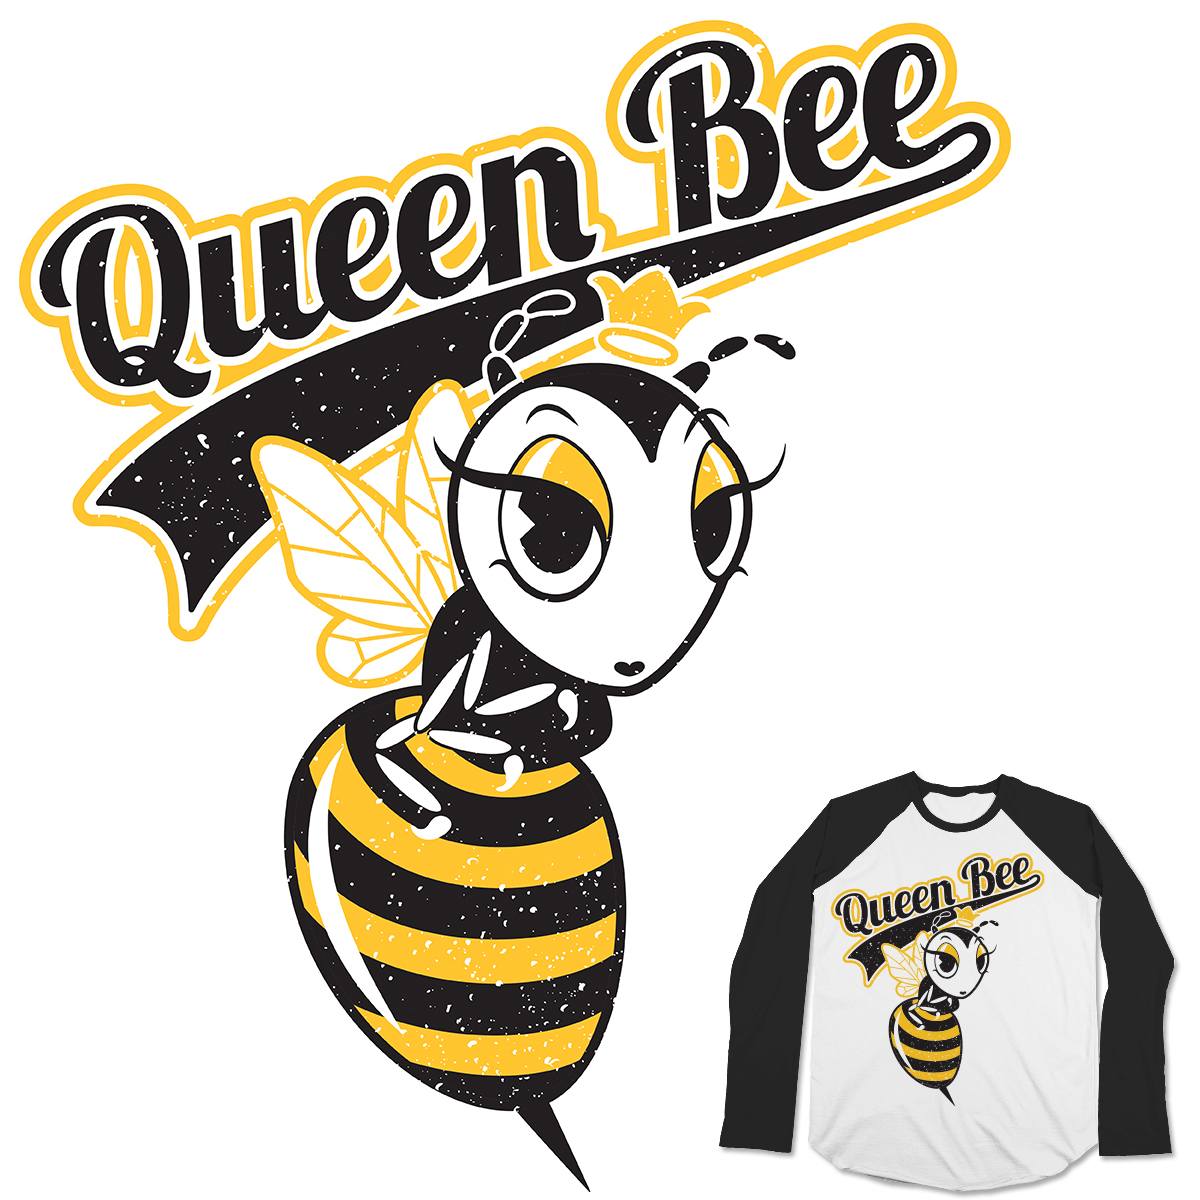 Score Queen Bee by NicoletteBiskamp on Threadless